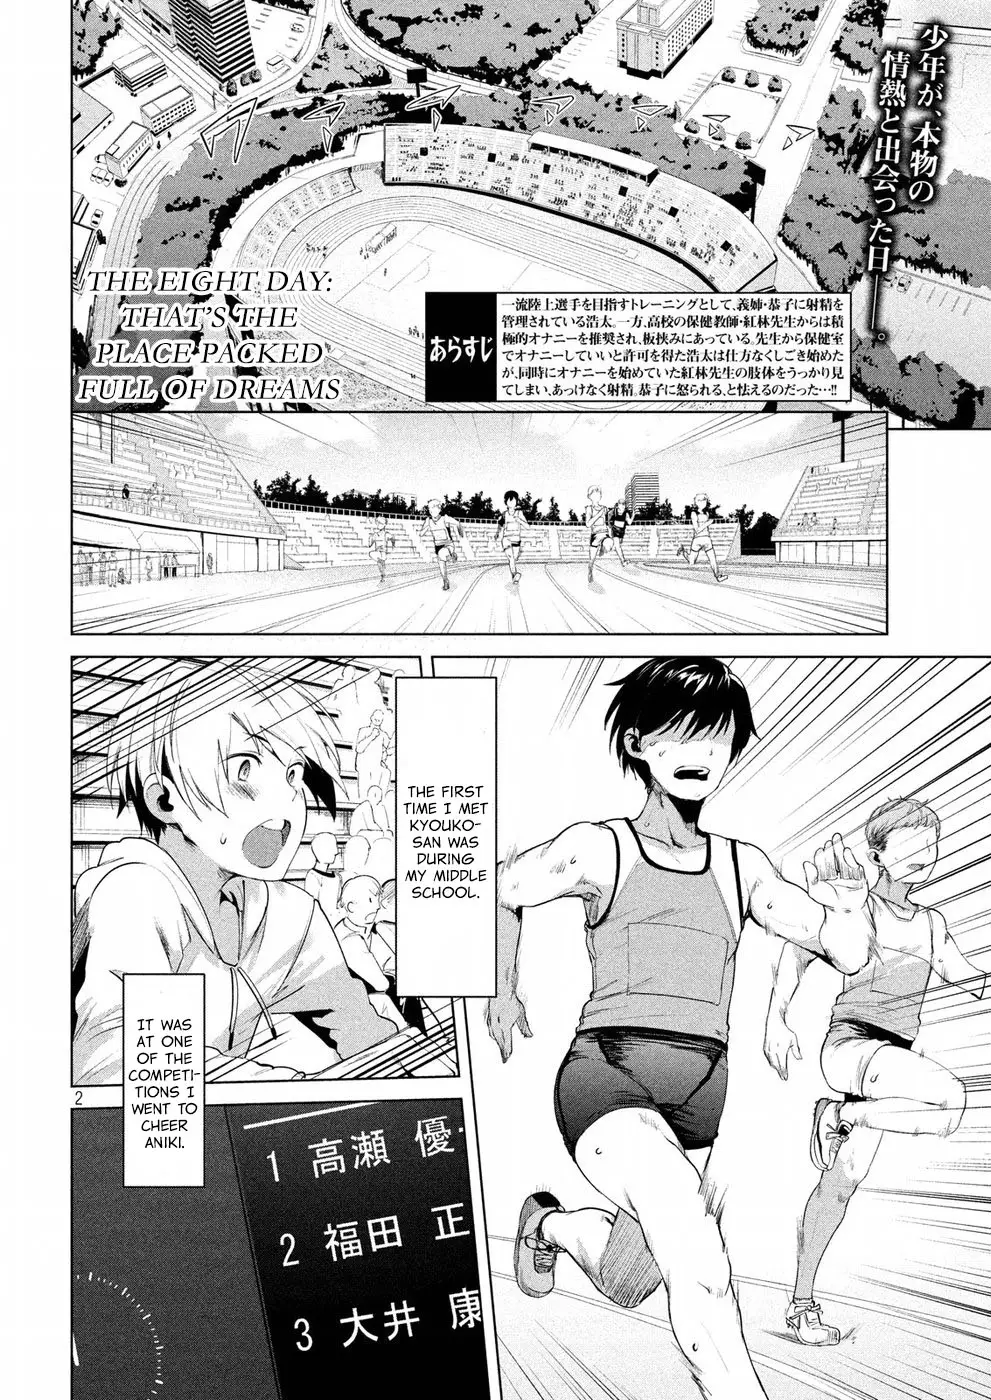 Megami No Sprinter - 8 page 3